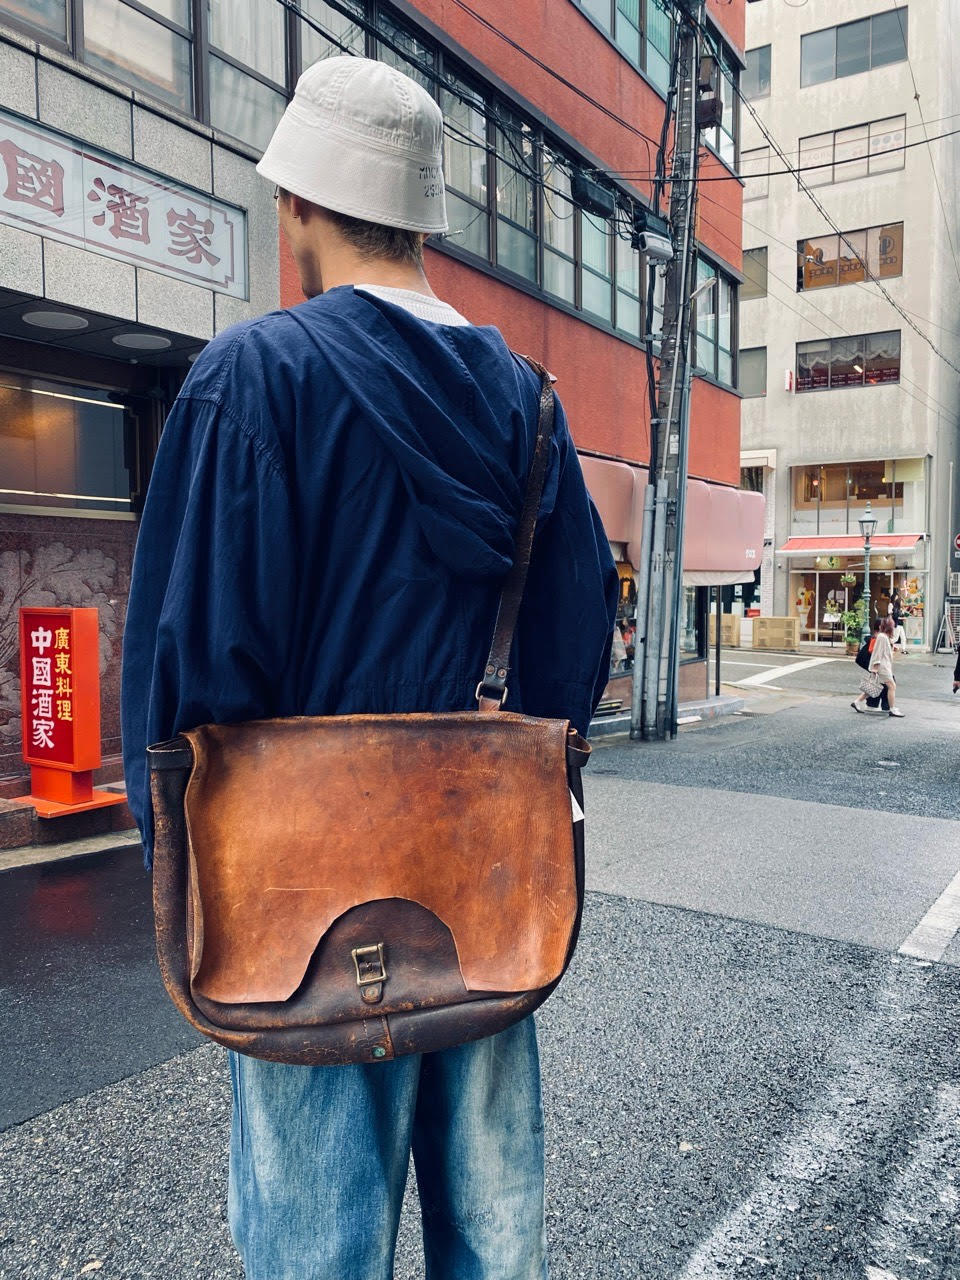 マグネッツ神戸店 5/17(水)Vintage入荷! #7 Vintage Bag Item!!!_c0078587_16273037.jpg